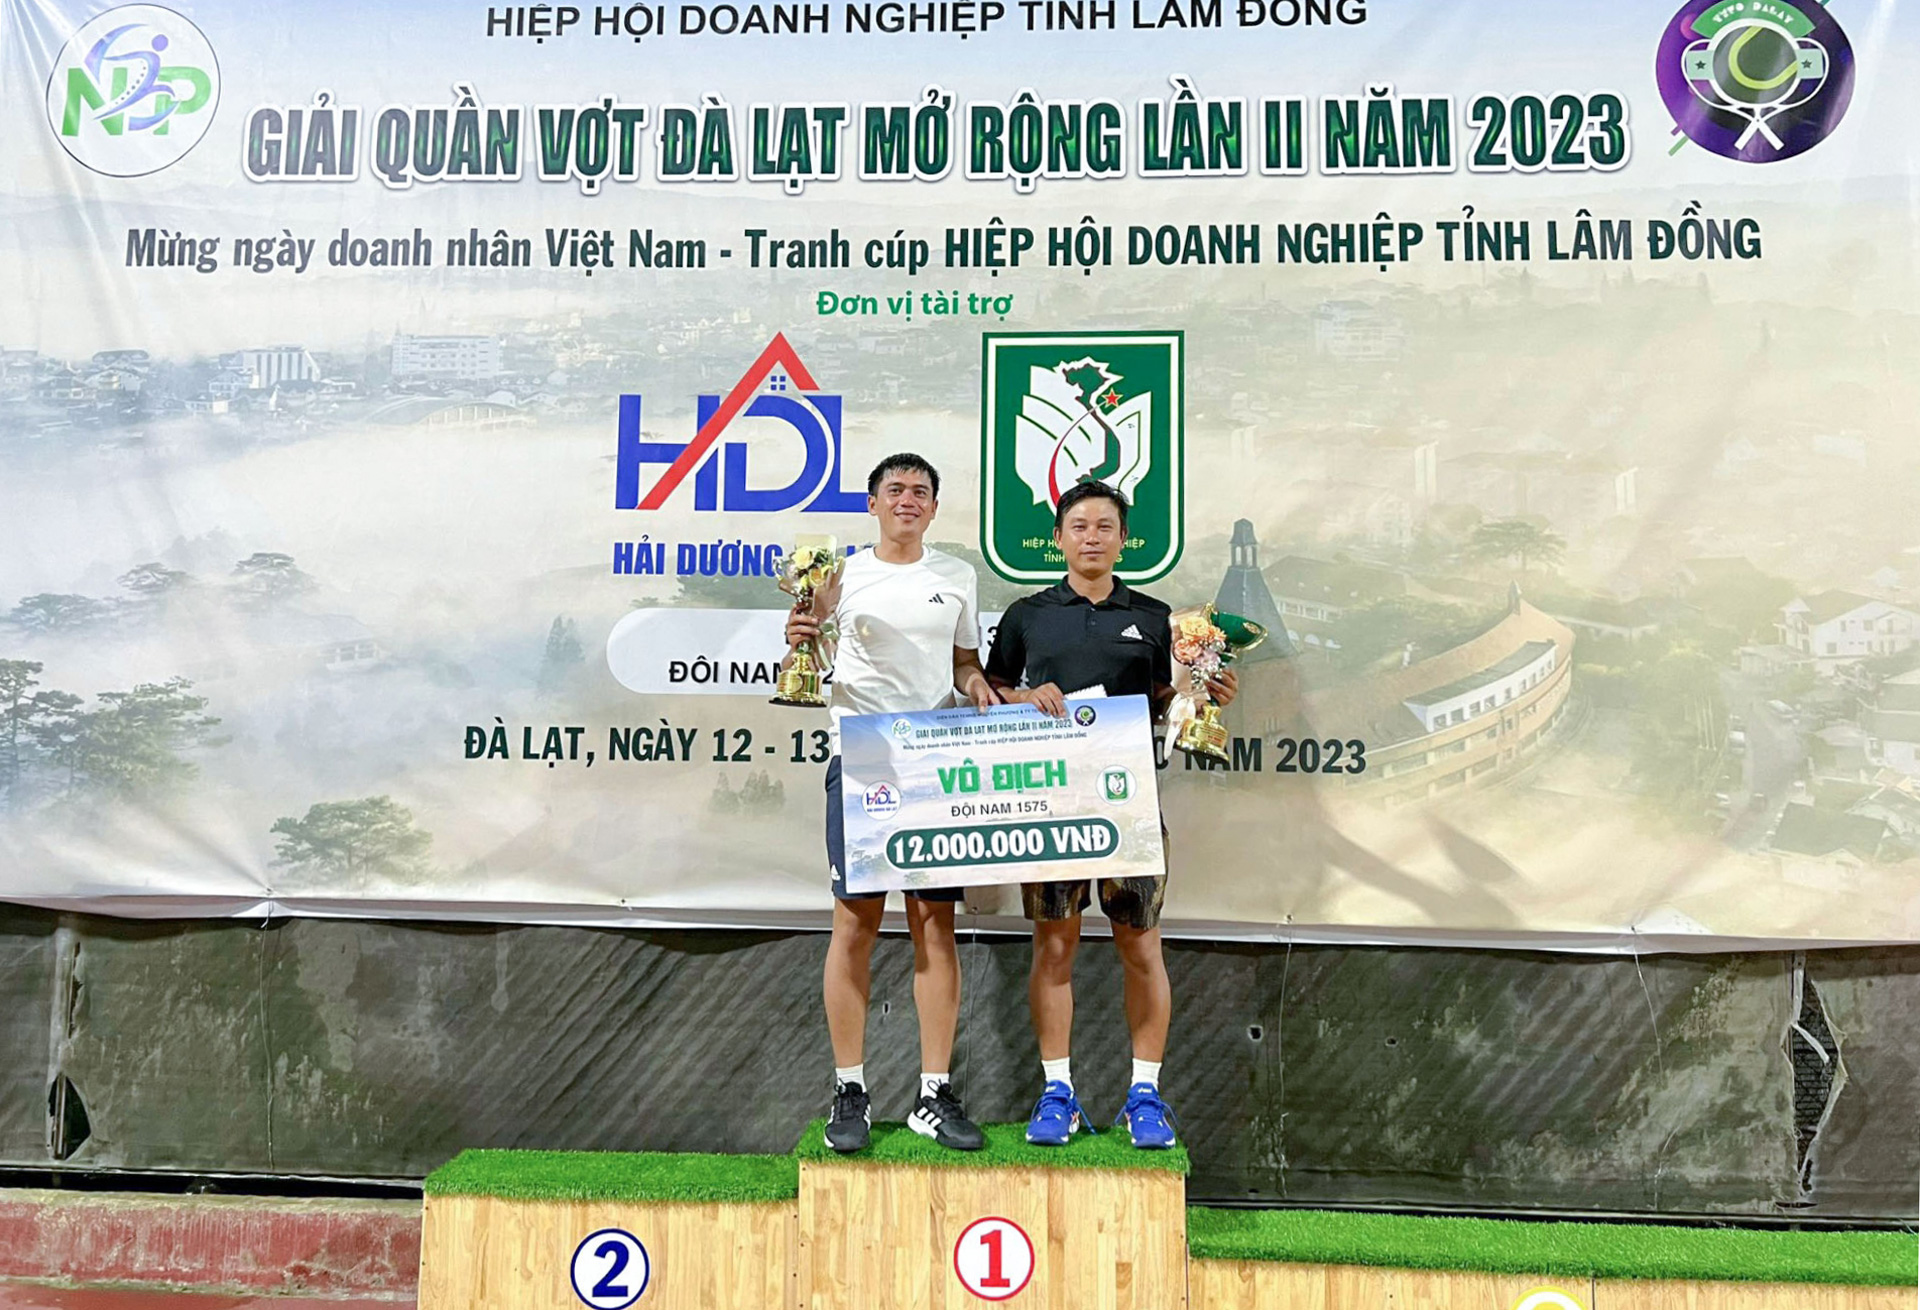 Cặp đôi nam vận động viên đoạt giải vô địch trình 1575 đến từ Khánh Hoà